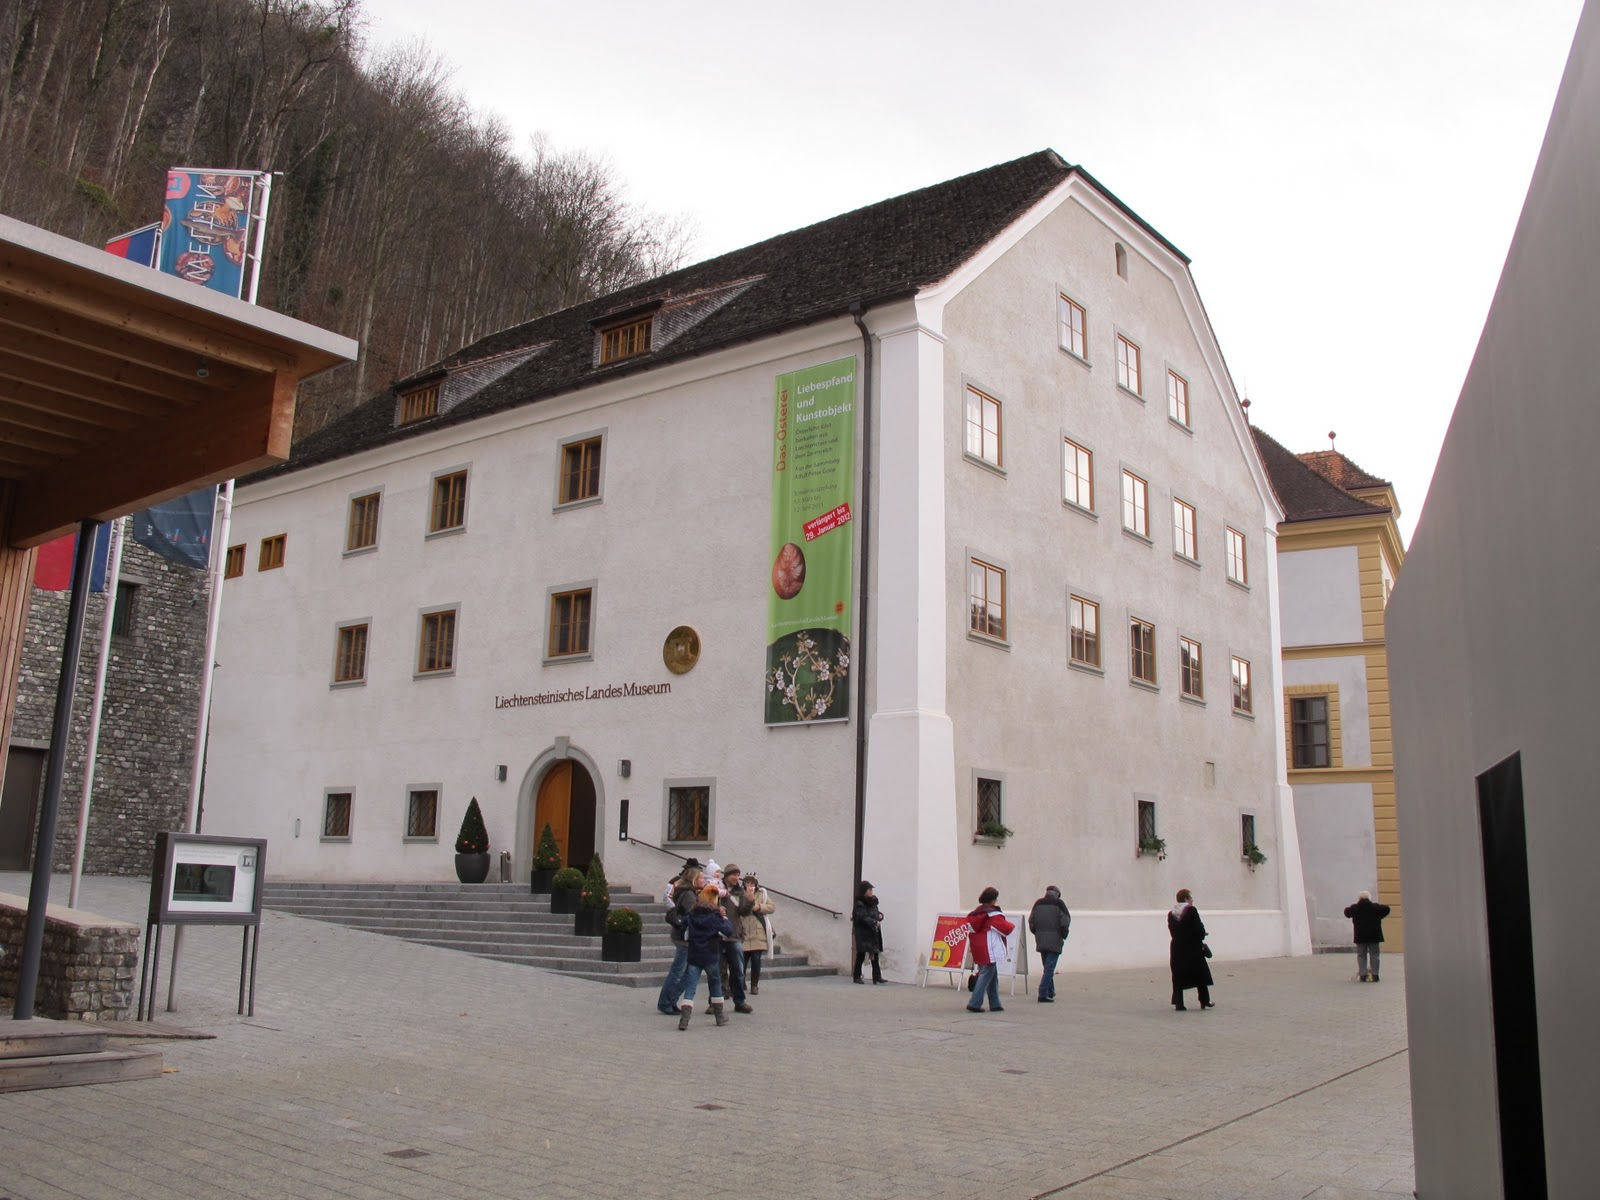 Liechtenstein National Museum